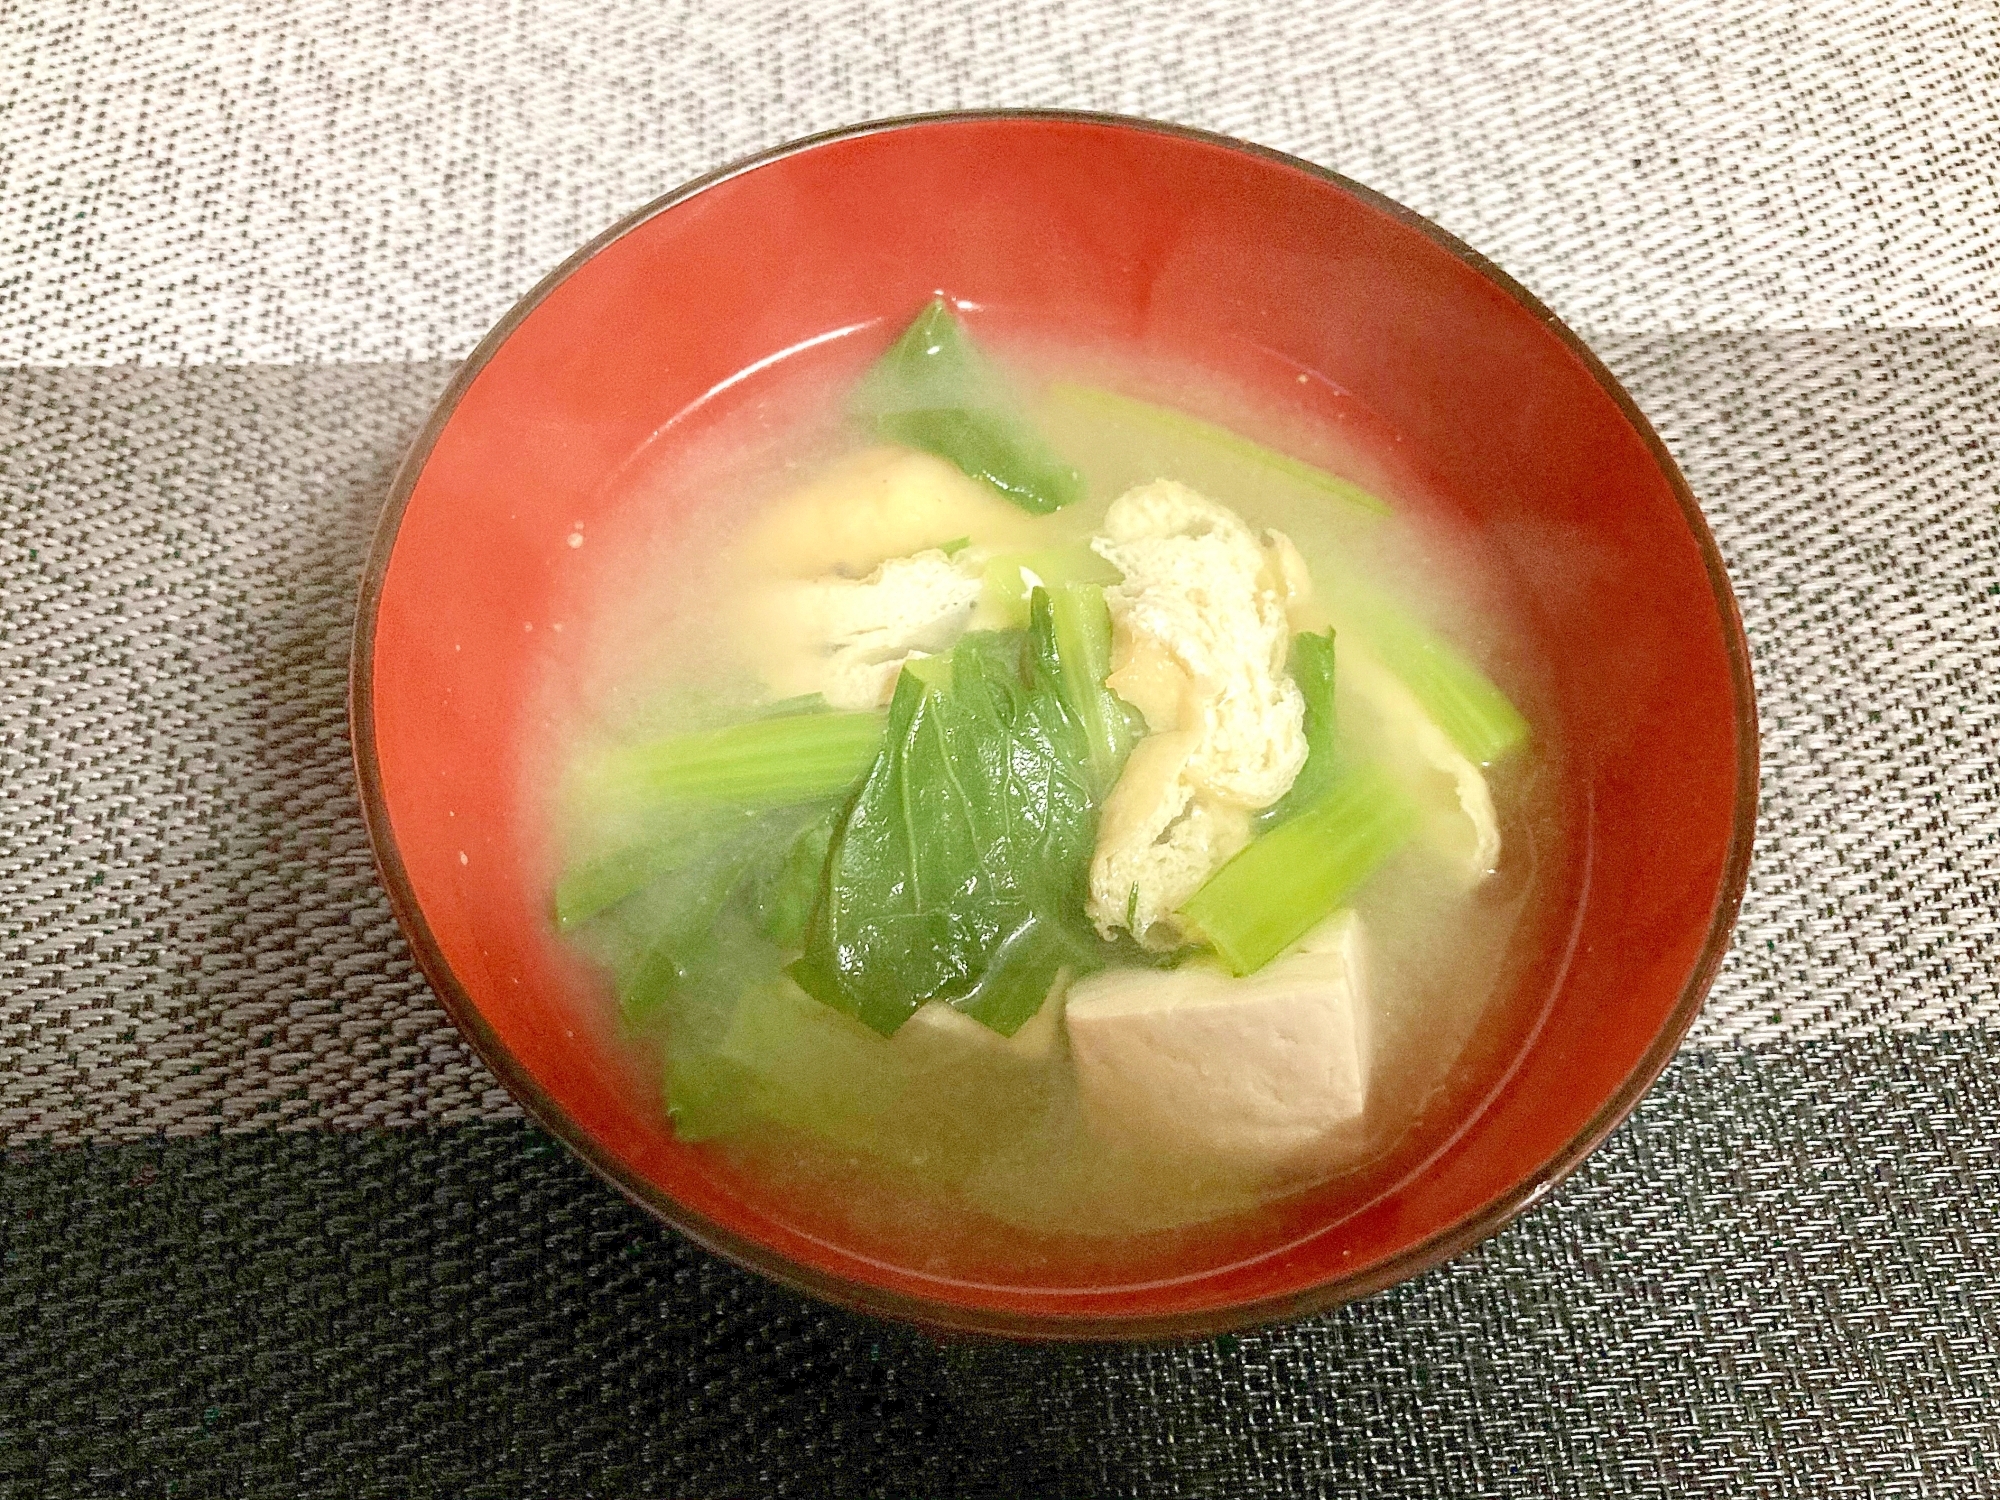 小松菜とがんもどきと木綿豆腐の味噌汁